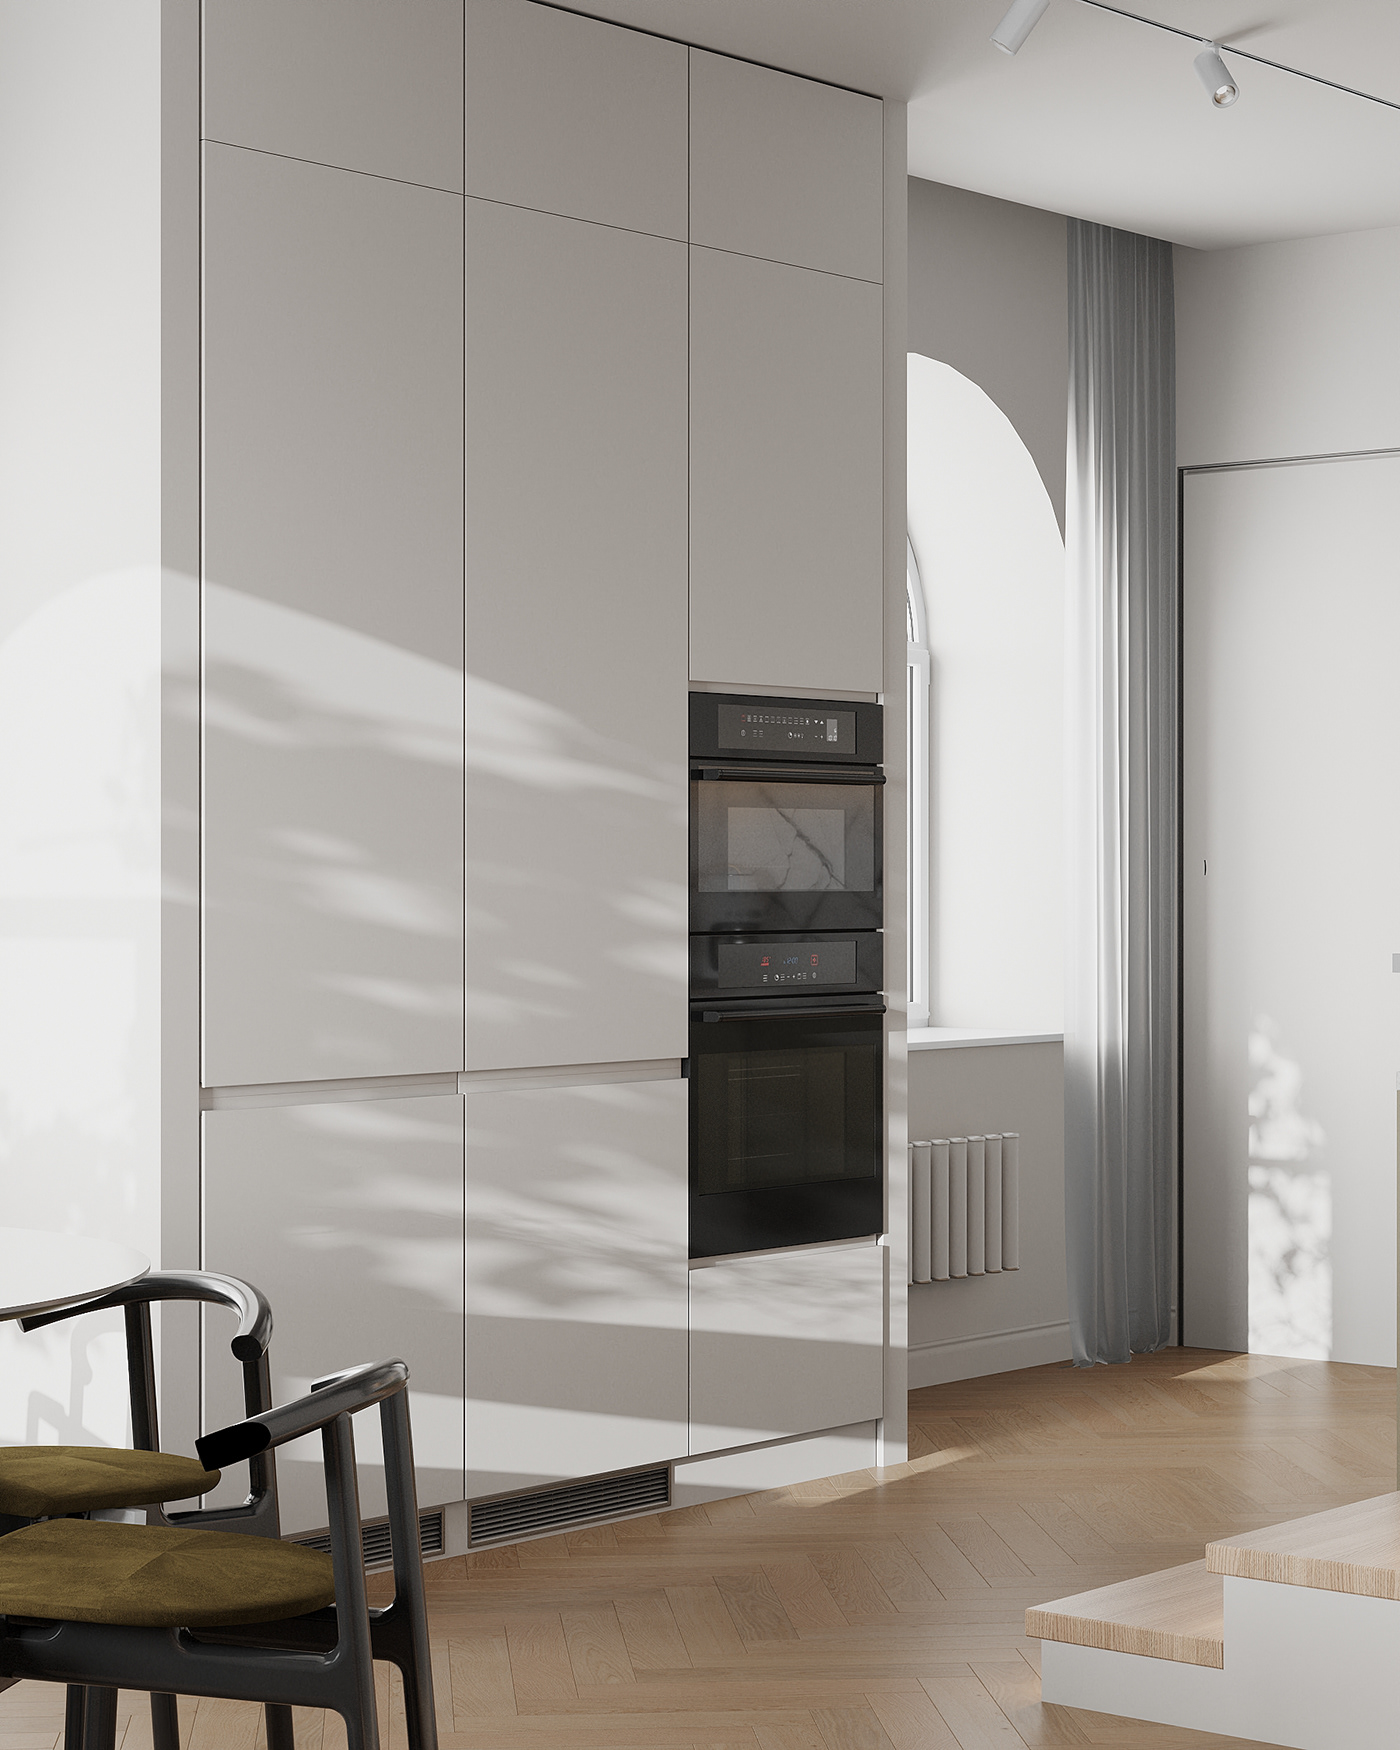 3ds max interior design  kitchen modern